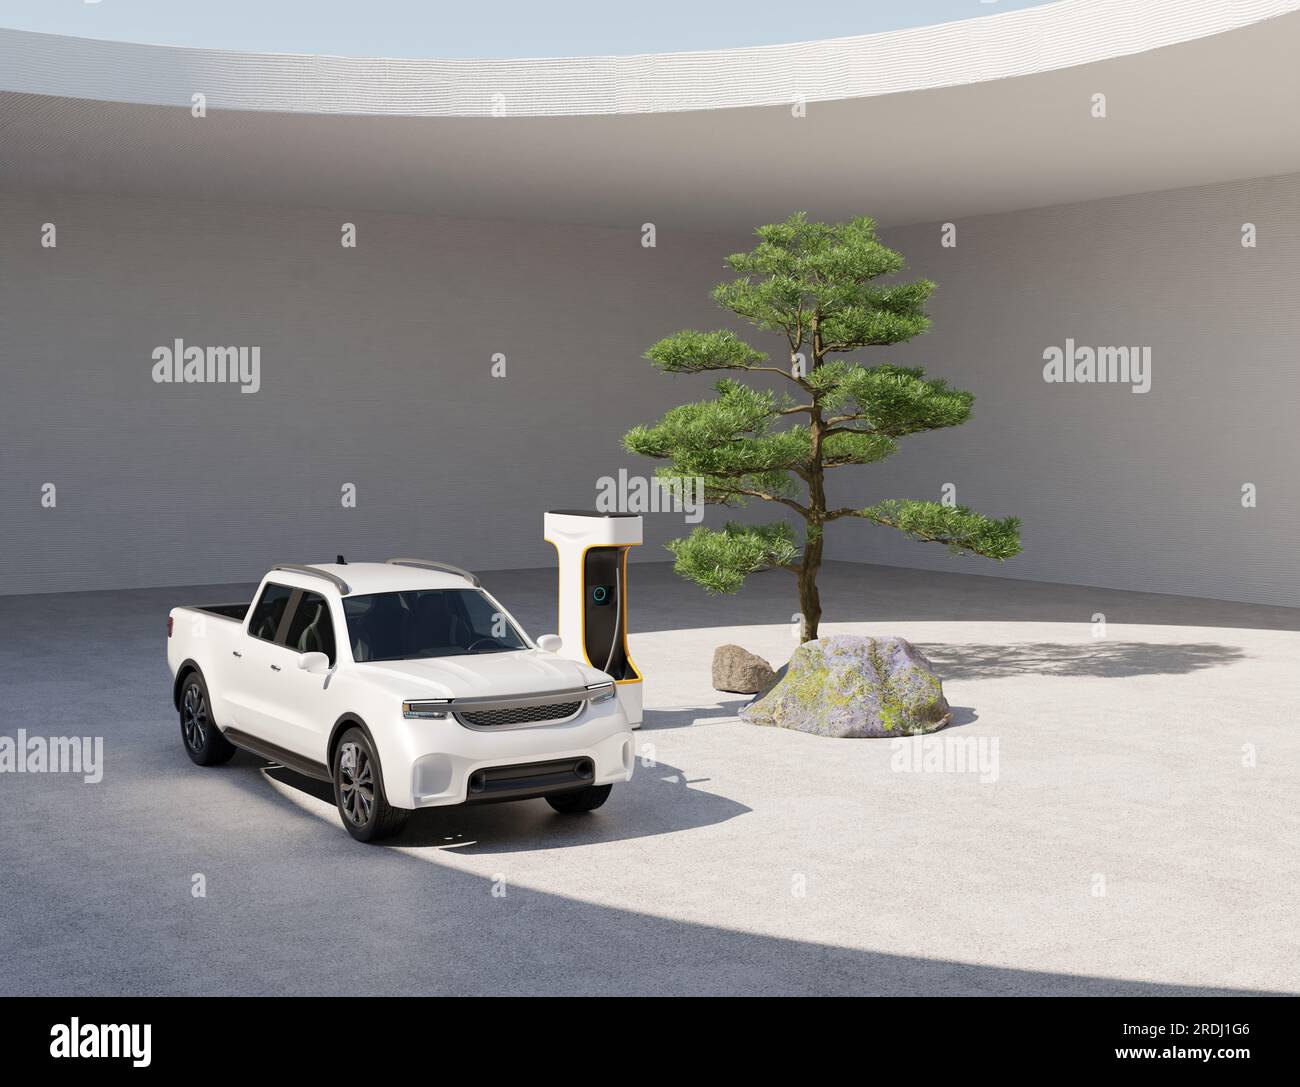 Camionnette électrique blanche chargeant dans la cour de style jardin zen japonais. Conception générique. Image de rendu 3D. Banque D'Images